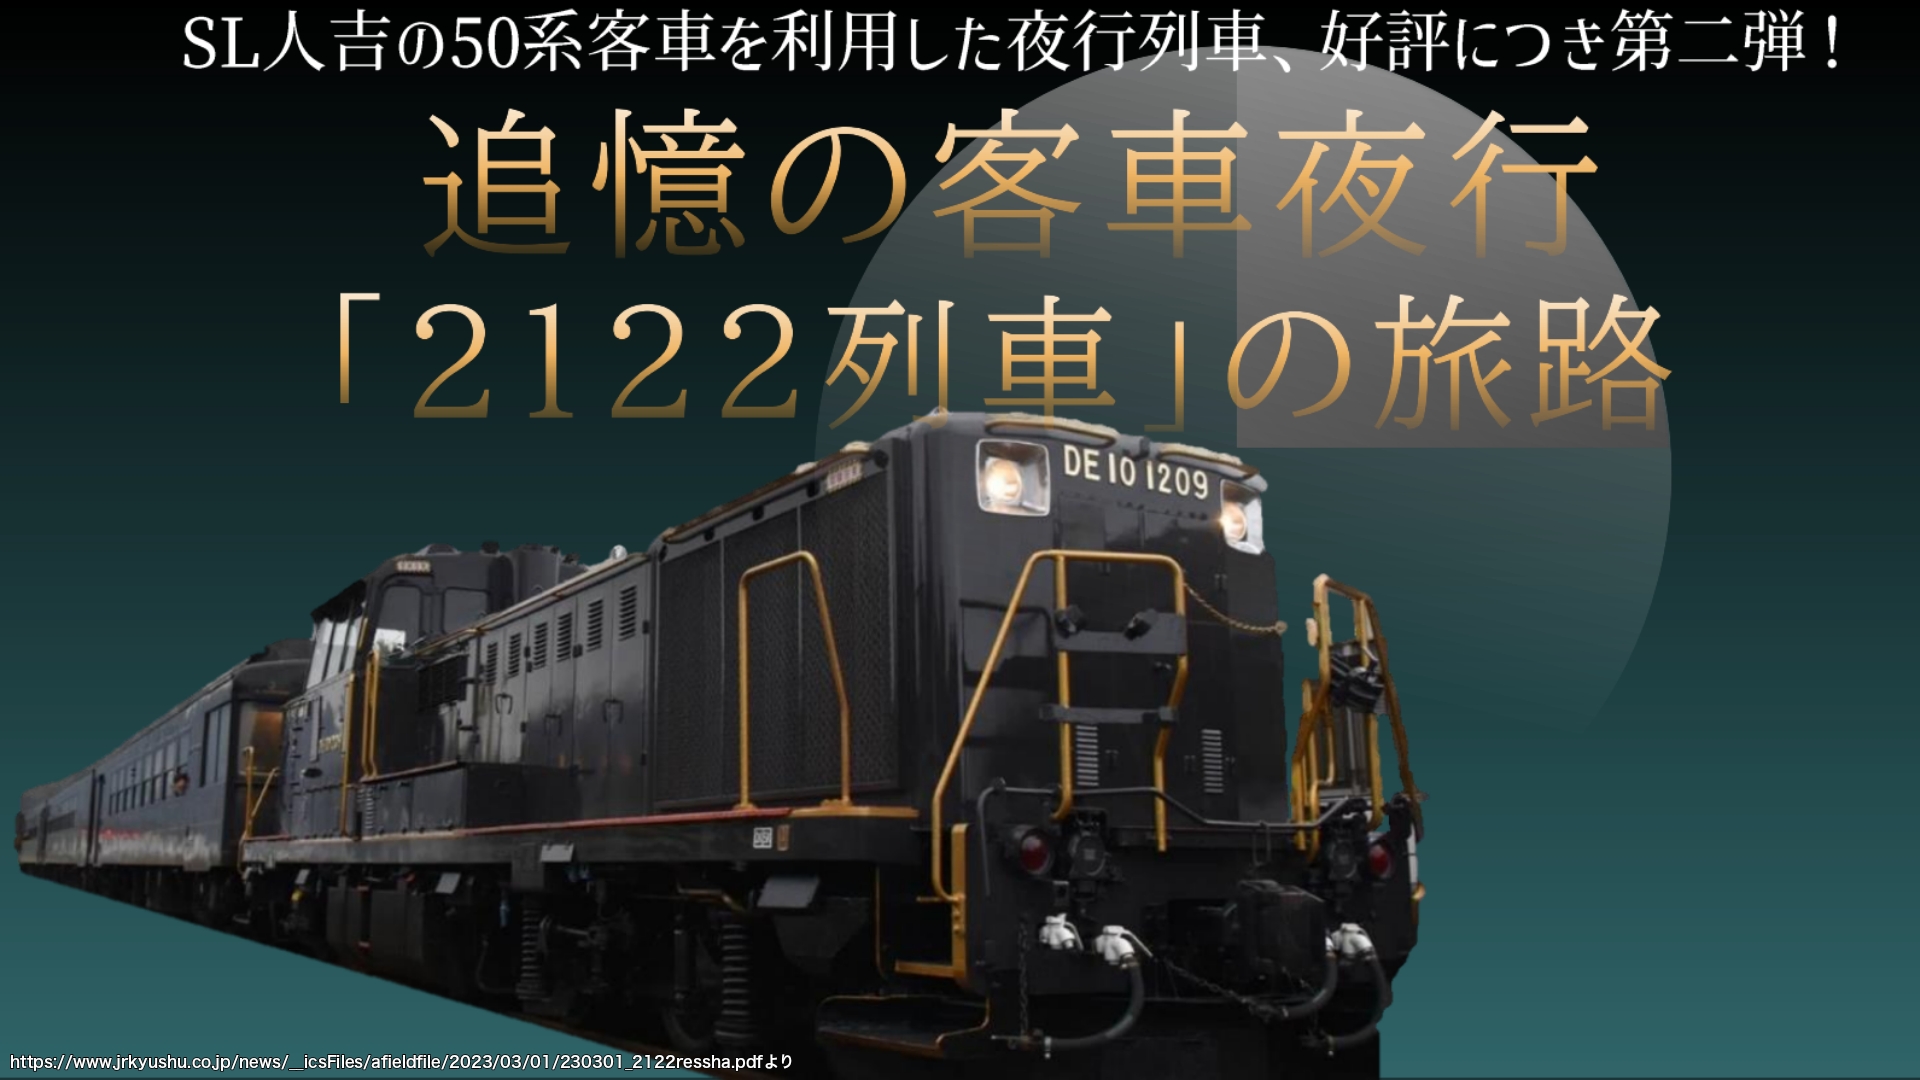 【客車夜行】追憶の客車夜行「2122 列車」の旅路 SL人吉50系客車で